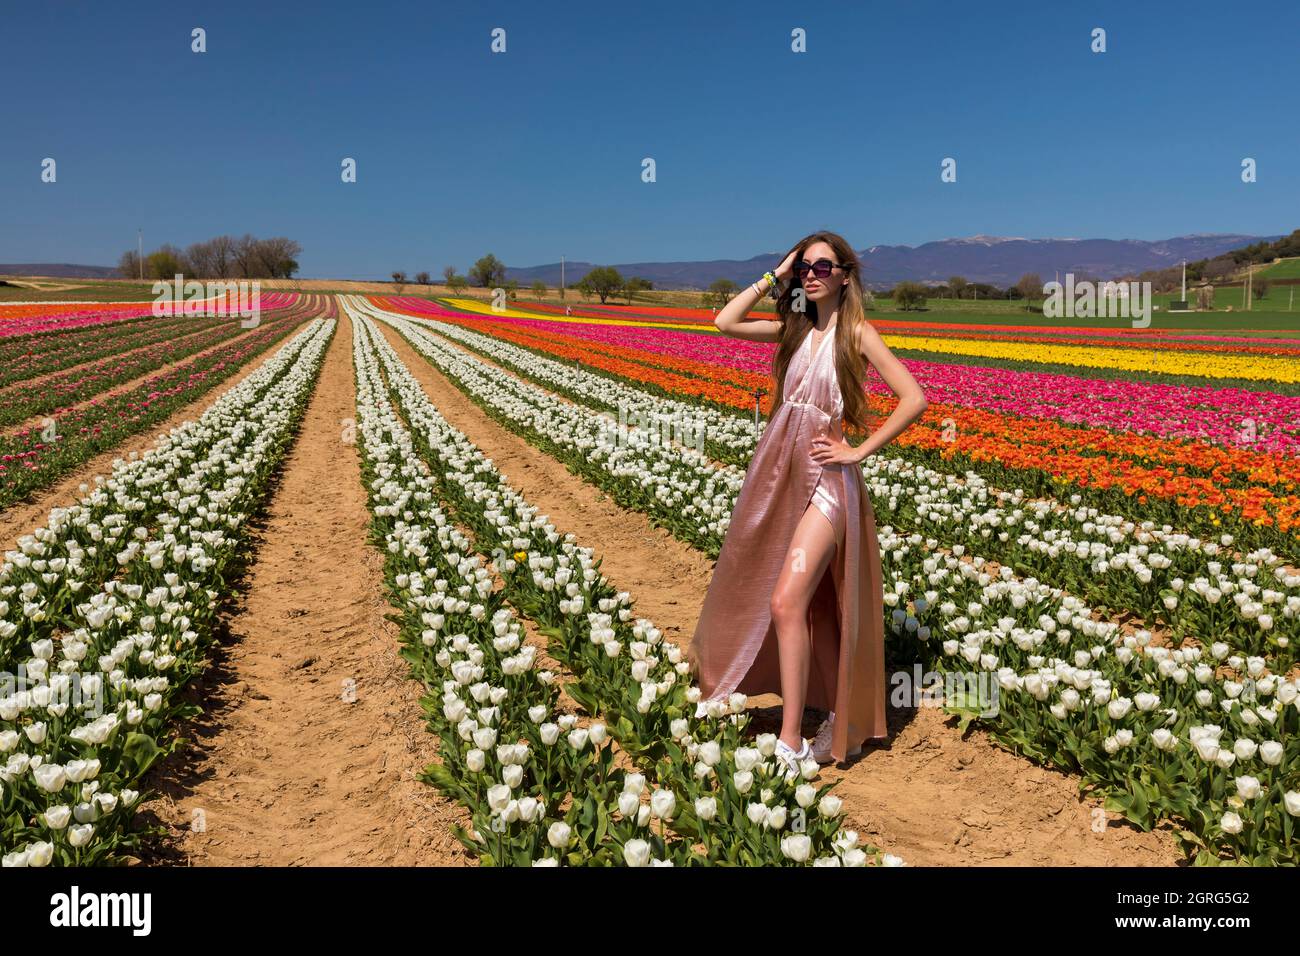 France, Alpes de Haute Provence, La Brillanne, tulips field Stock Photo